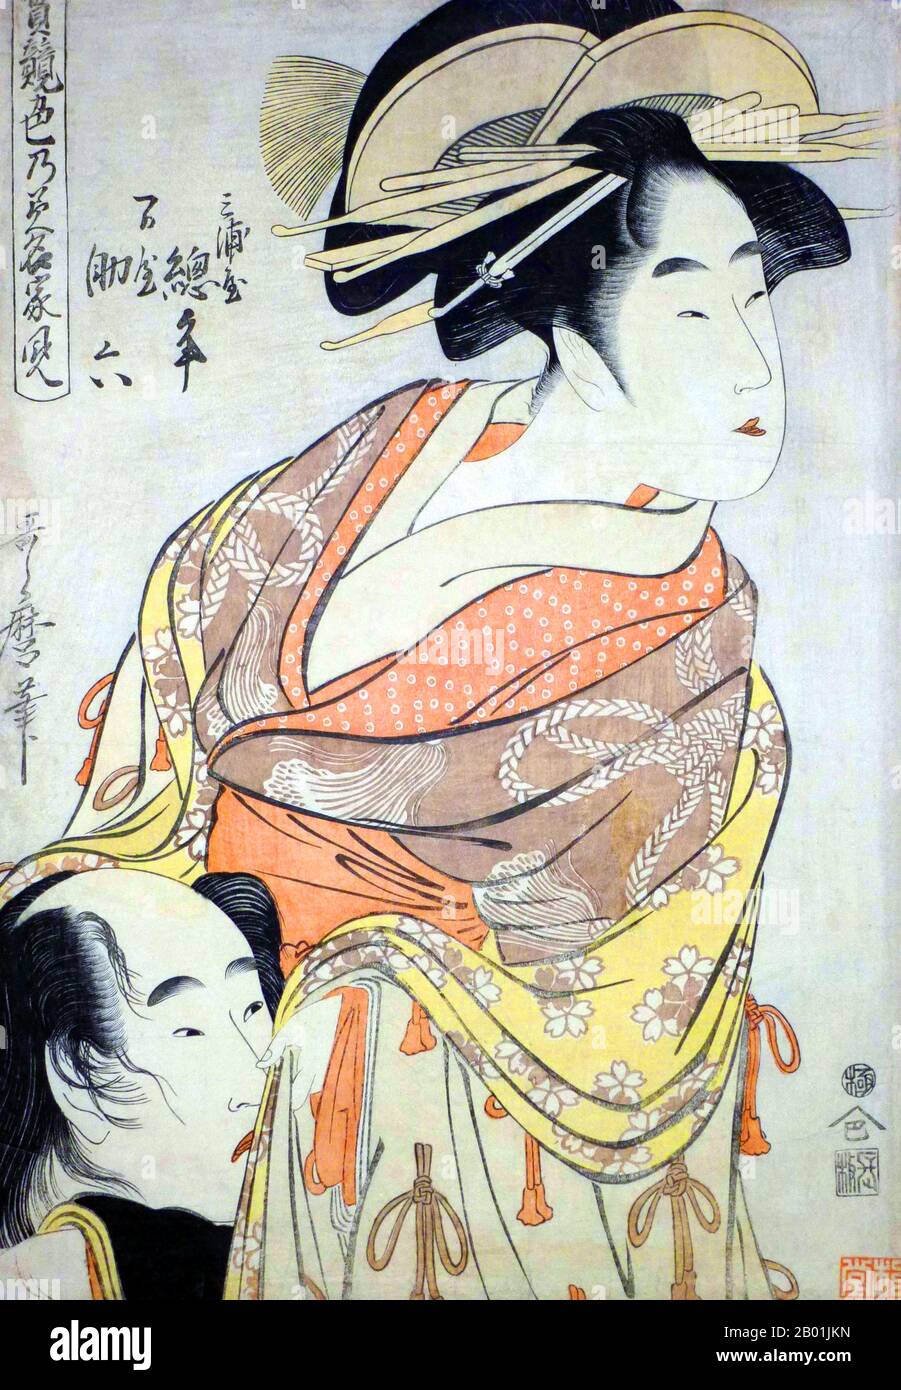 Japon : les amoureux Miuraya Agemaki et Yorozuya Sukeroku de la série 'Jitsu kurabe iro no minakami (True Feelings Comparated) : The Founts of Love'. Estampe sur bois Ukiyo-e de Kitagawa Utamaro (c. 1753 - 31 octobre 1806), c. 1798-1799. Kitagawa Utamaro était un graveur et peintre japonais, considéré comme l'un des plus grands artistes de gravures sur bois (ukiyo-e). Il est surtout connu pour ses études magistralement composées de femmes, connues sous le nom de bijinga. Il a également produit des études sur la nature, en particulier des livres illustrés d'insectes. Banque D'Images